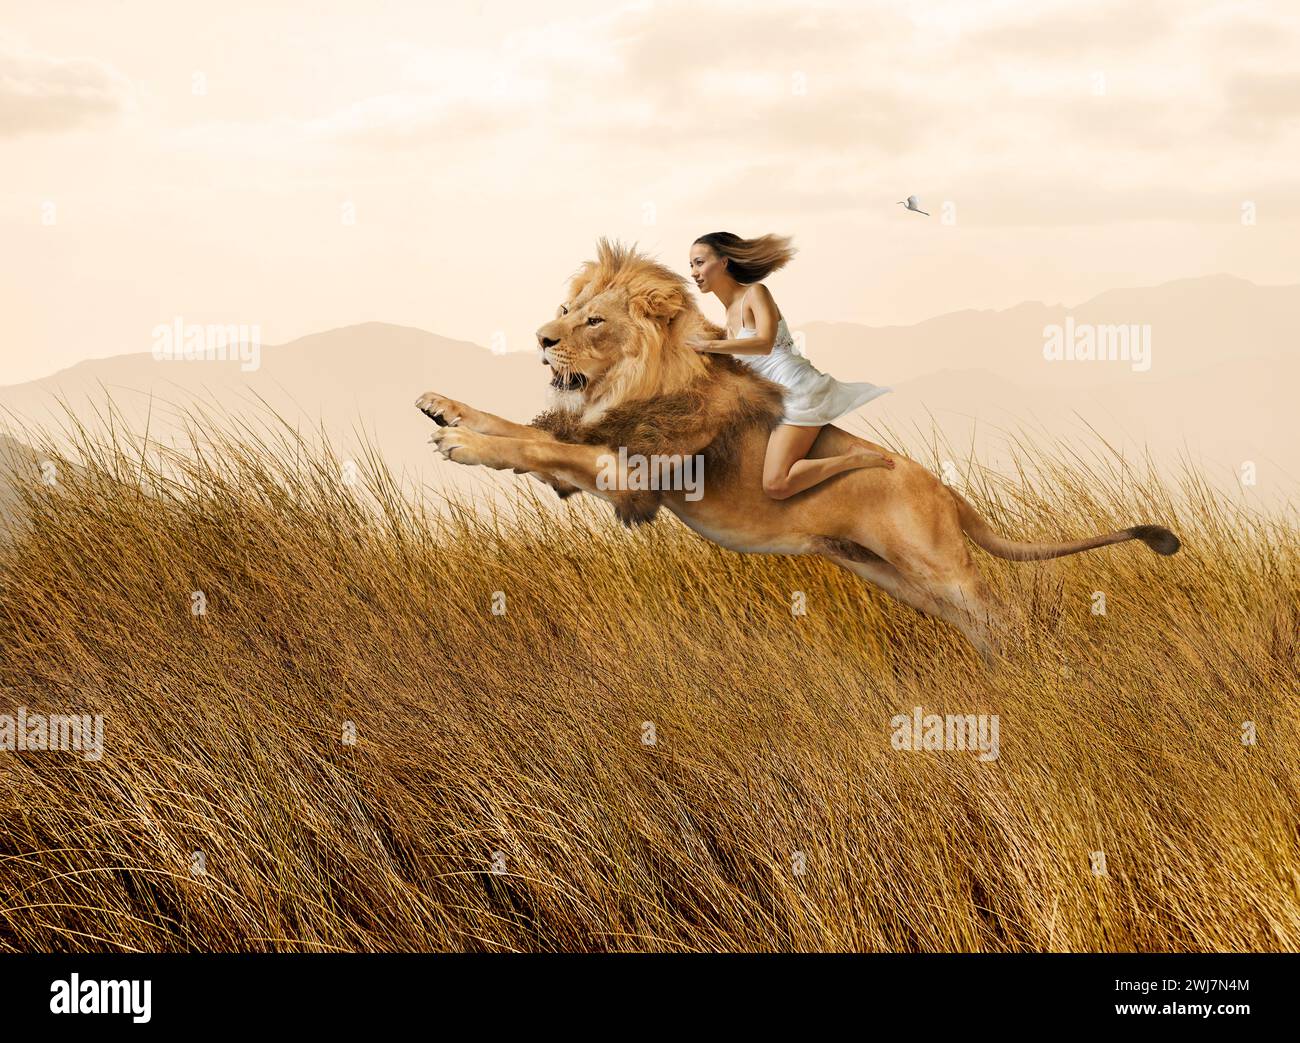 Une femme monte un lion bondissant à travers de hautes herbes dans une image sur les femmes fortes, le courage, l'audace, la possibilité et le leadership Banque D'Images